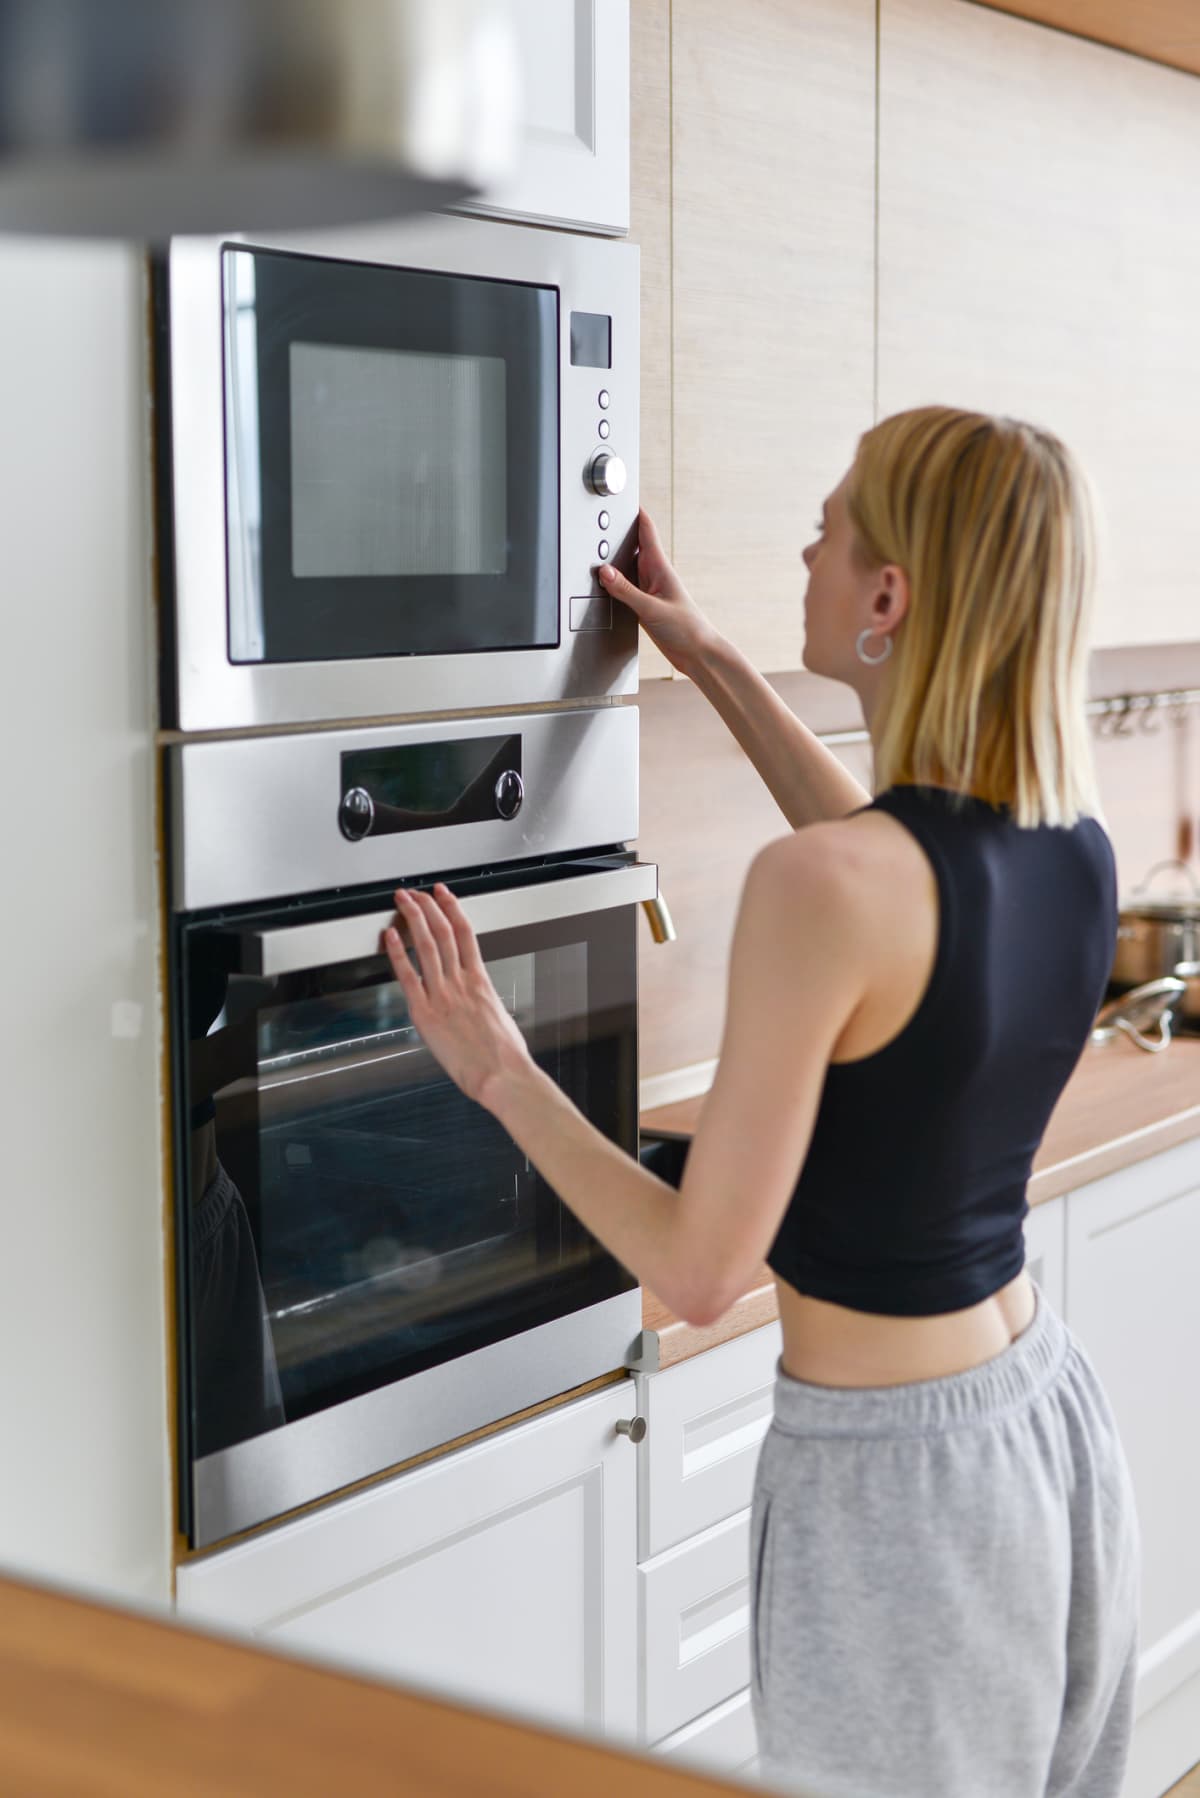 Woman heating food in microwave